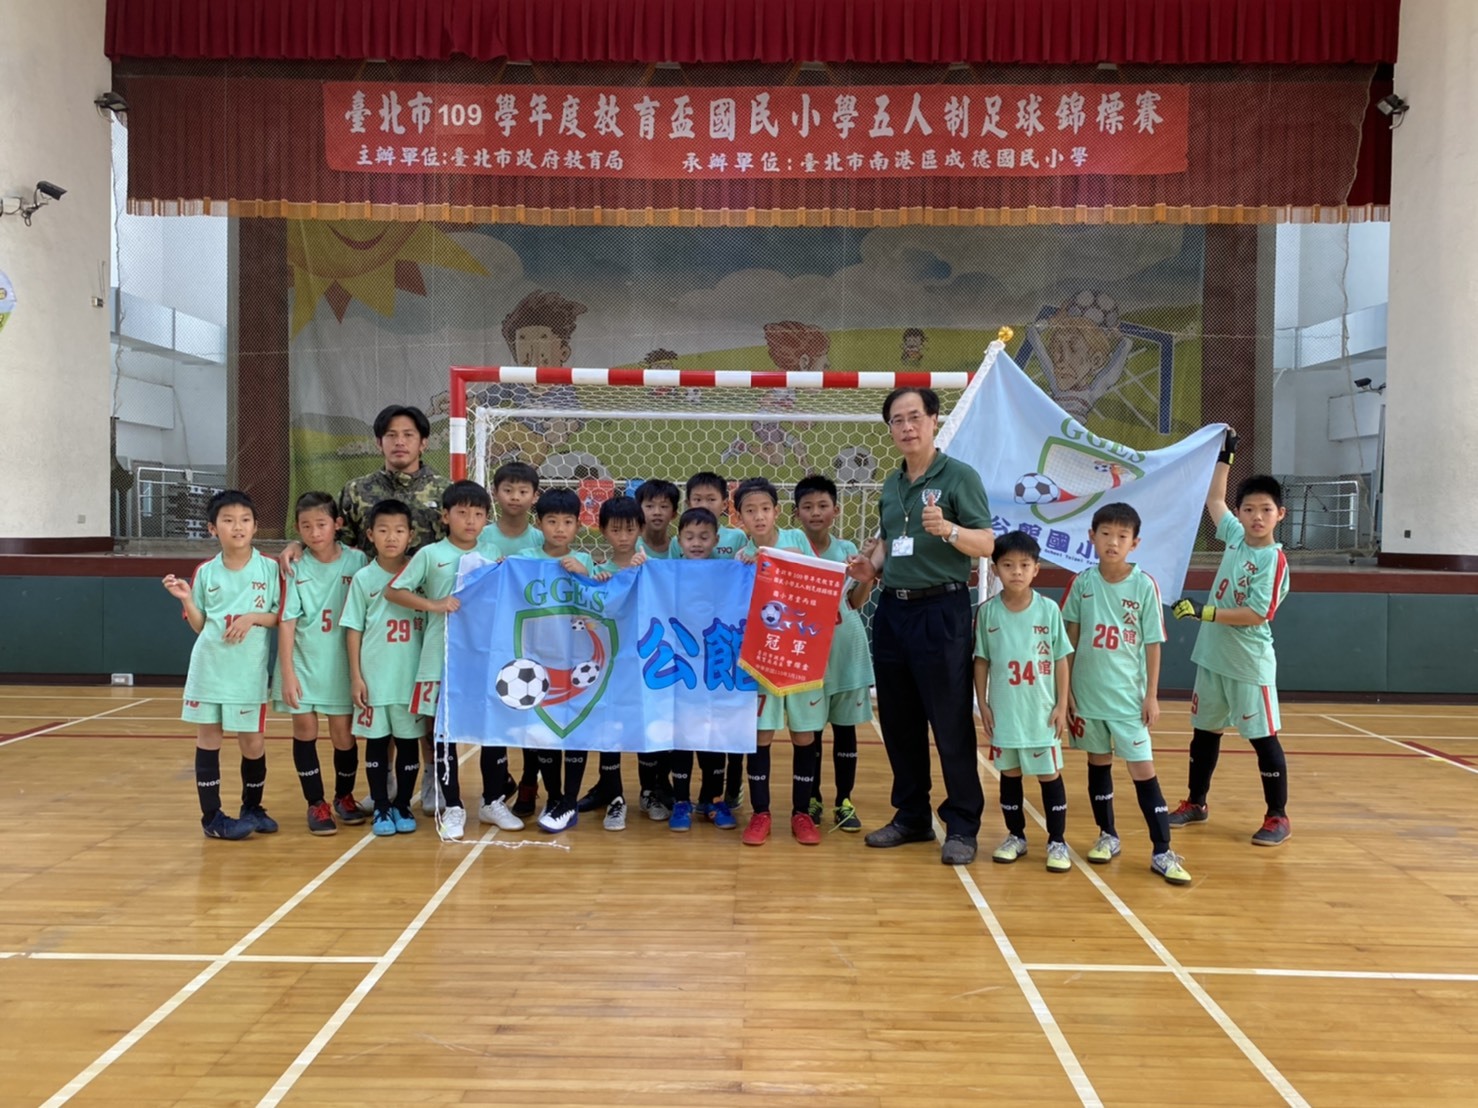 公館國小足球隊拿下臺北市教育盃五人制足球錦標賽男子丙組冠軍